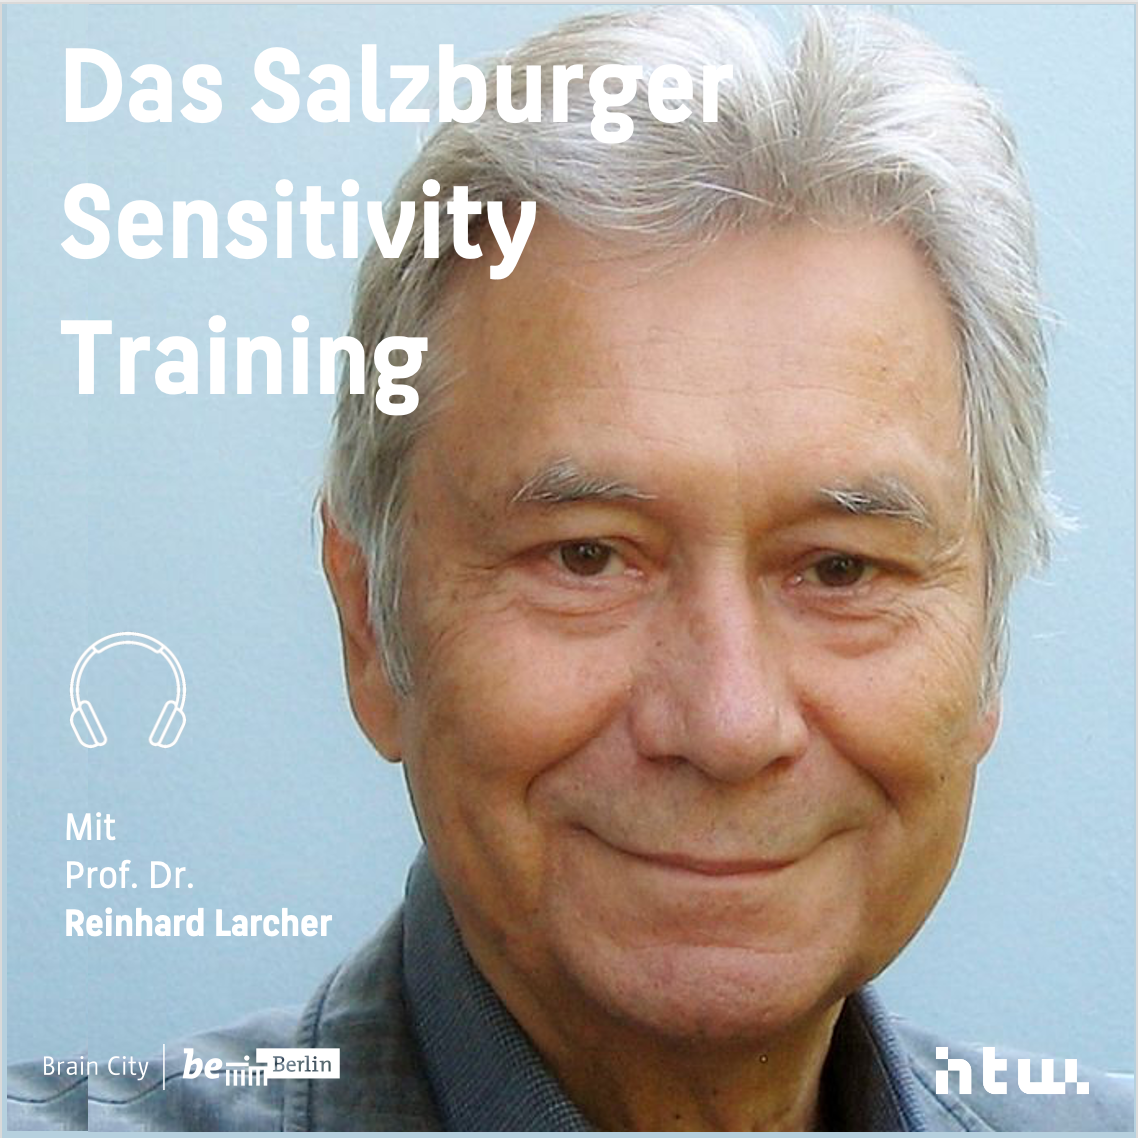 Das Salzburger Sensitivity Training - Im Gespräch mit Reinhard Larcher